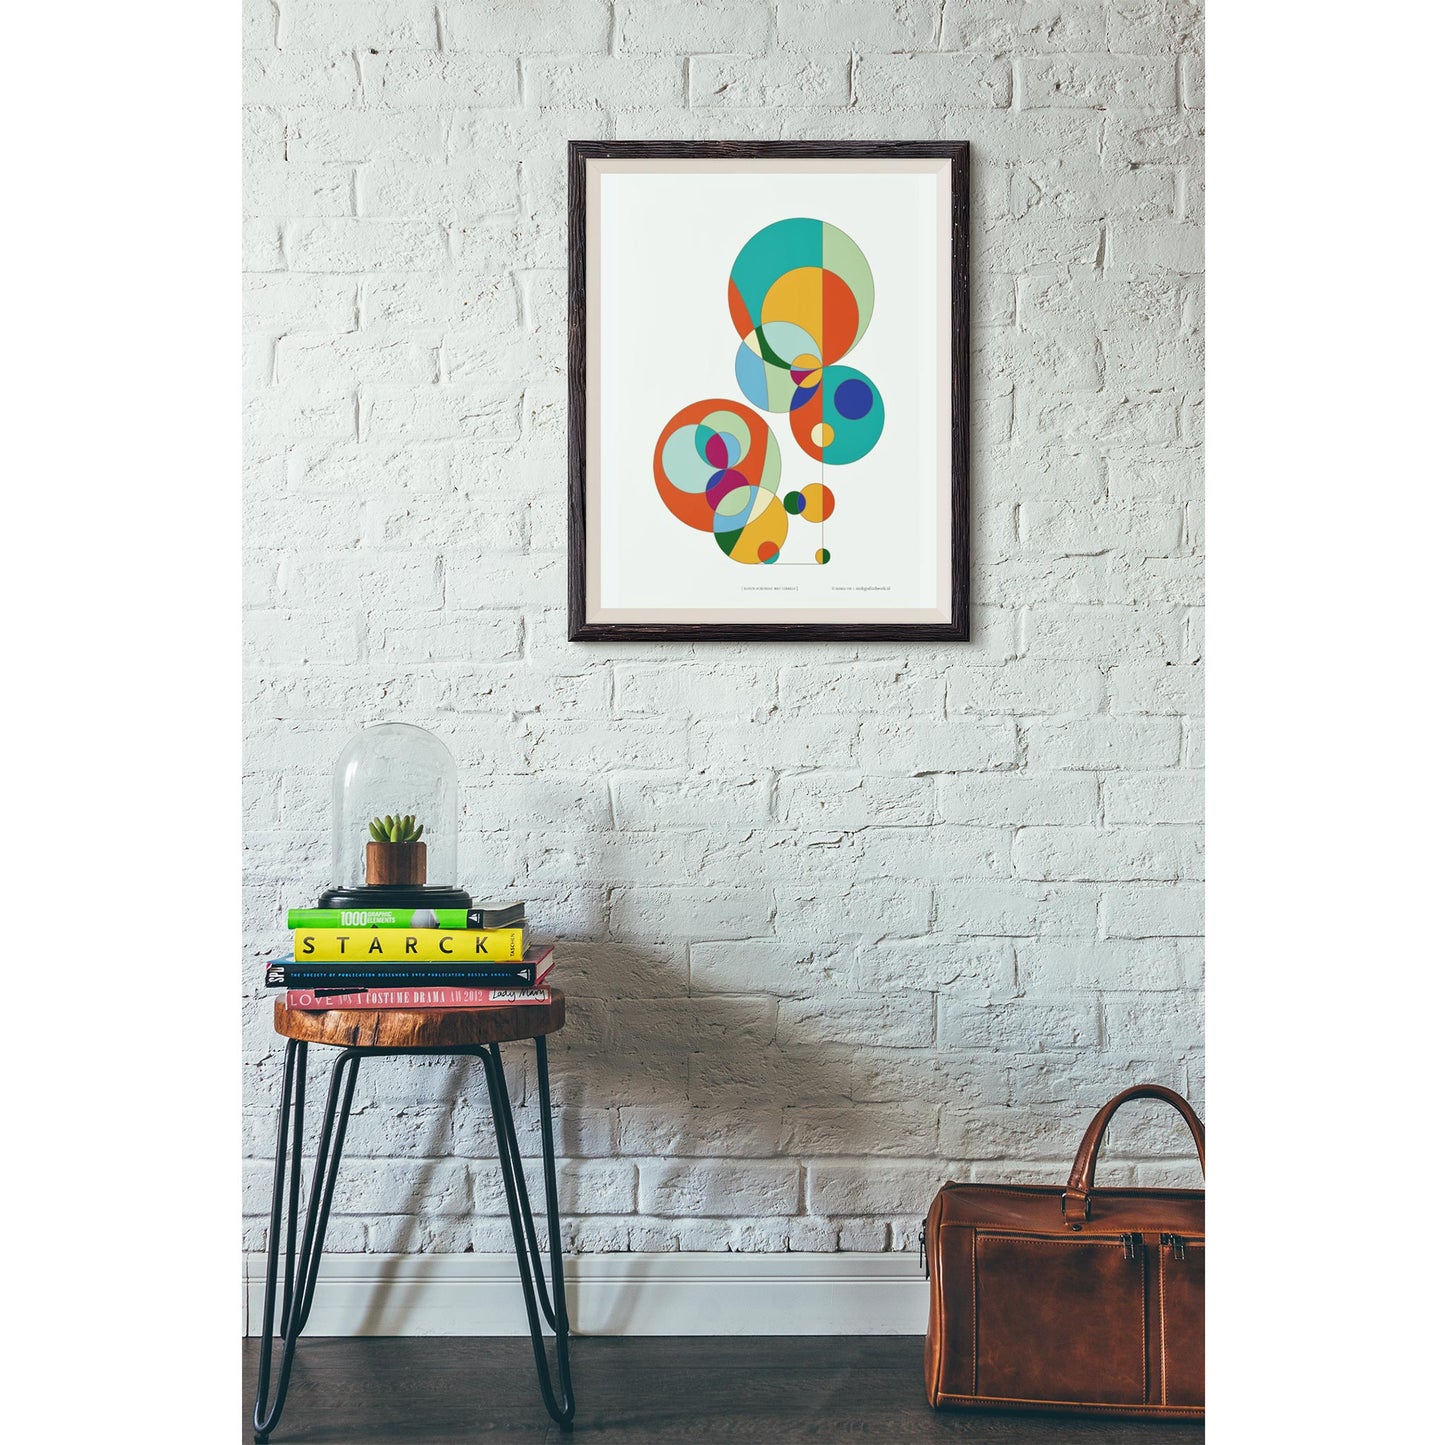 Productafbeelding, poster "kleur-acrobaat met cirkels", foto impressie 1, hangend aan een authentieke wand in een interieur